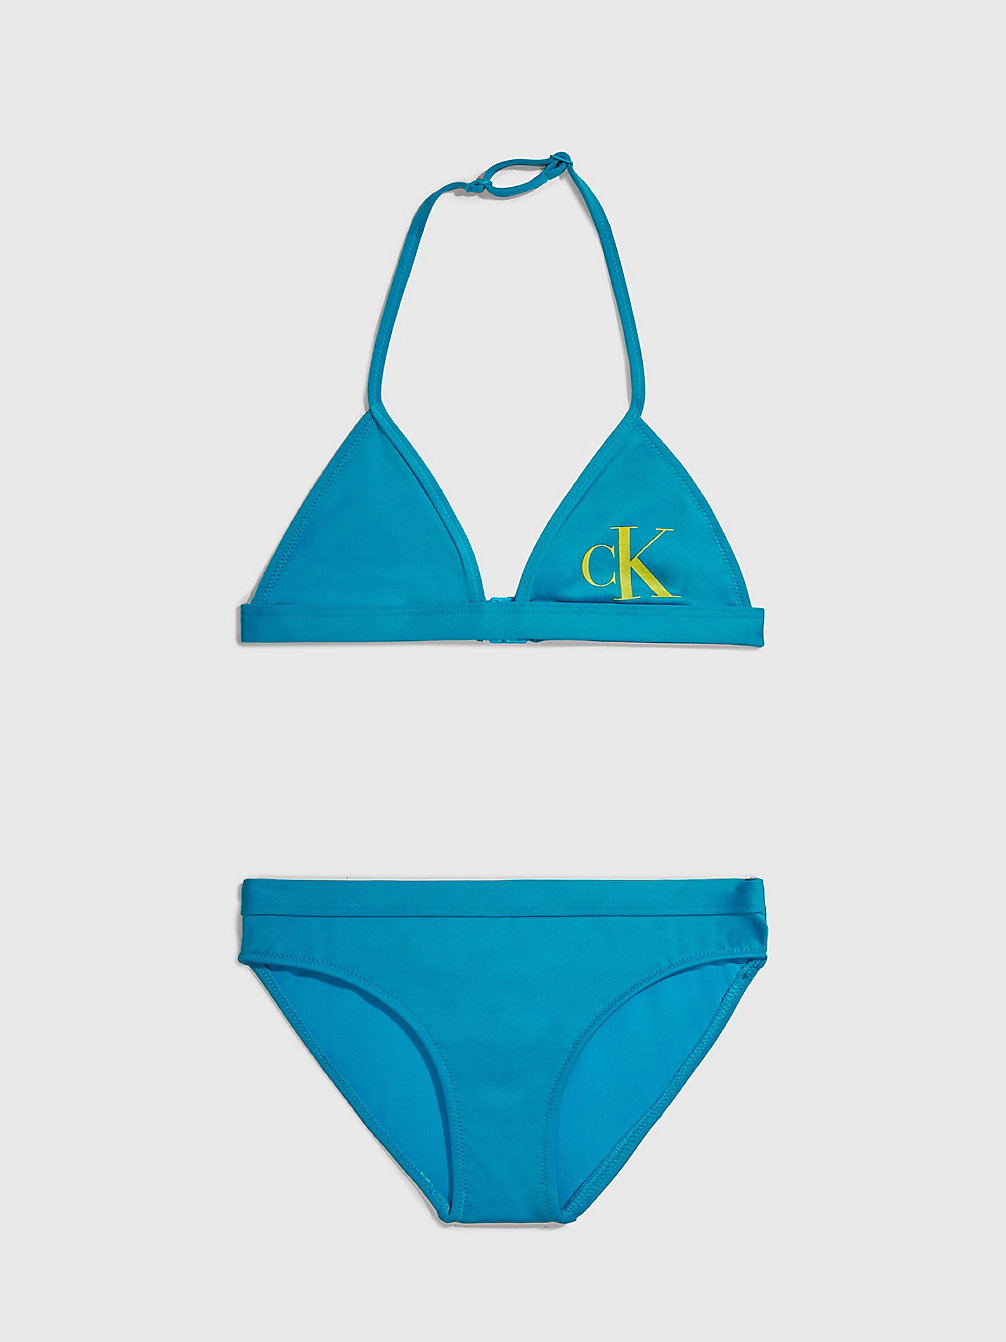 CLEAR TURQUOISE Bikini-Set Mit Triangel-Top Für Mädchen - CK Monogram undefined girls Calvin Klein